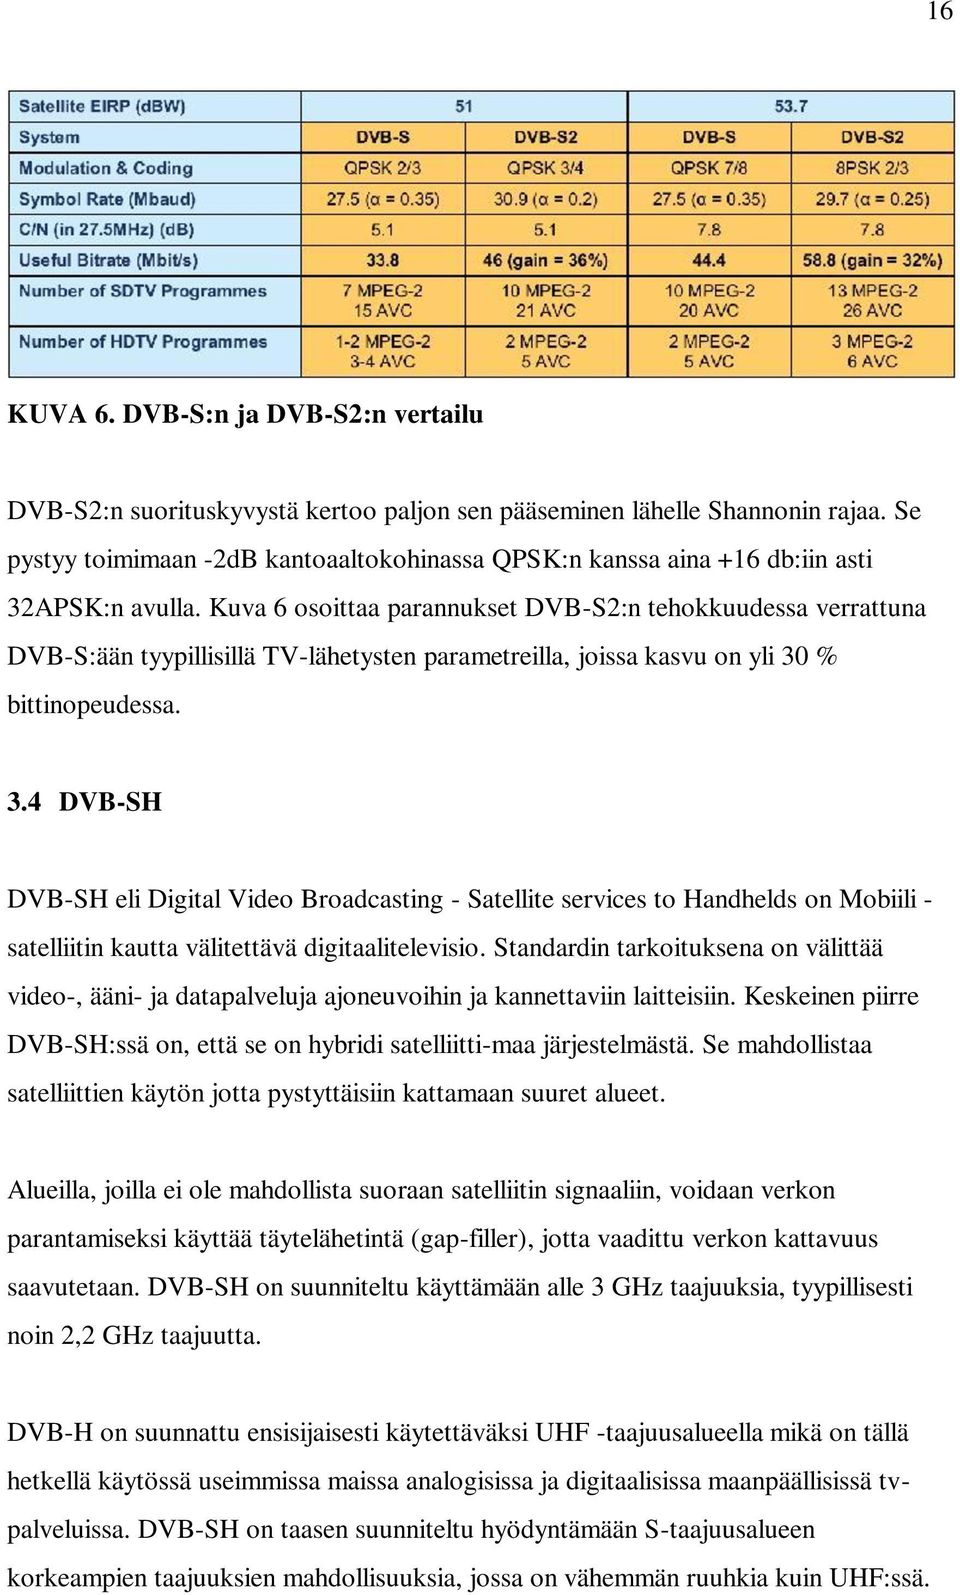 Kuva 6 osoittaa parannukset DVB-S2:n tehokkuudessa verrattuna DVB-S:ään tyypillisillä TV-lähetysten parametreilla, joissa kasvu on yli 30